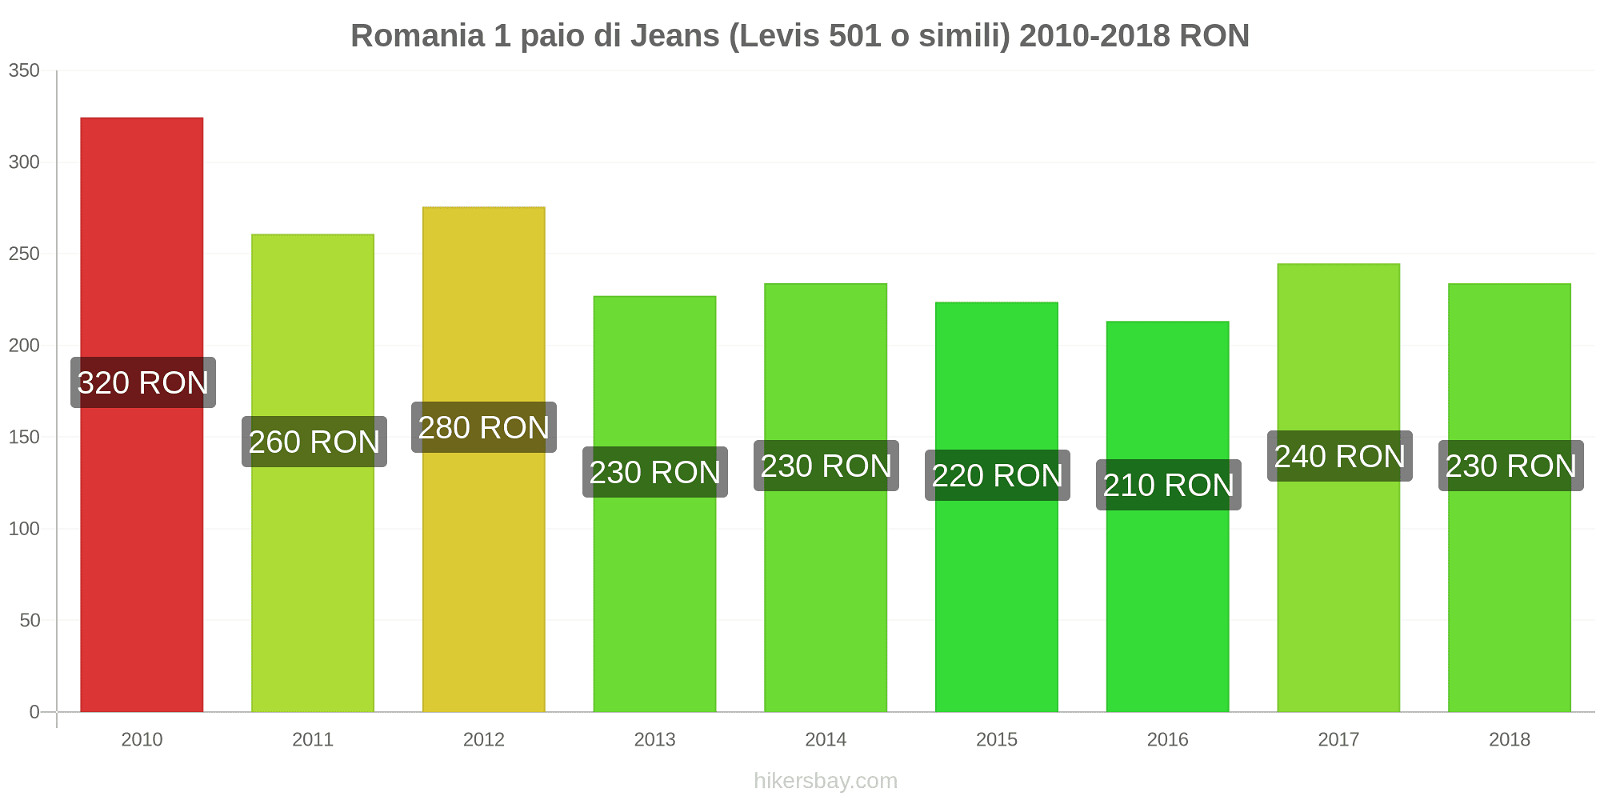 Romania cambi di prezzo 1 paio di jeans (Levis 501 o simili) hikersbay.com